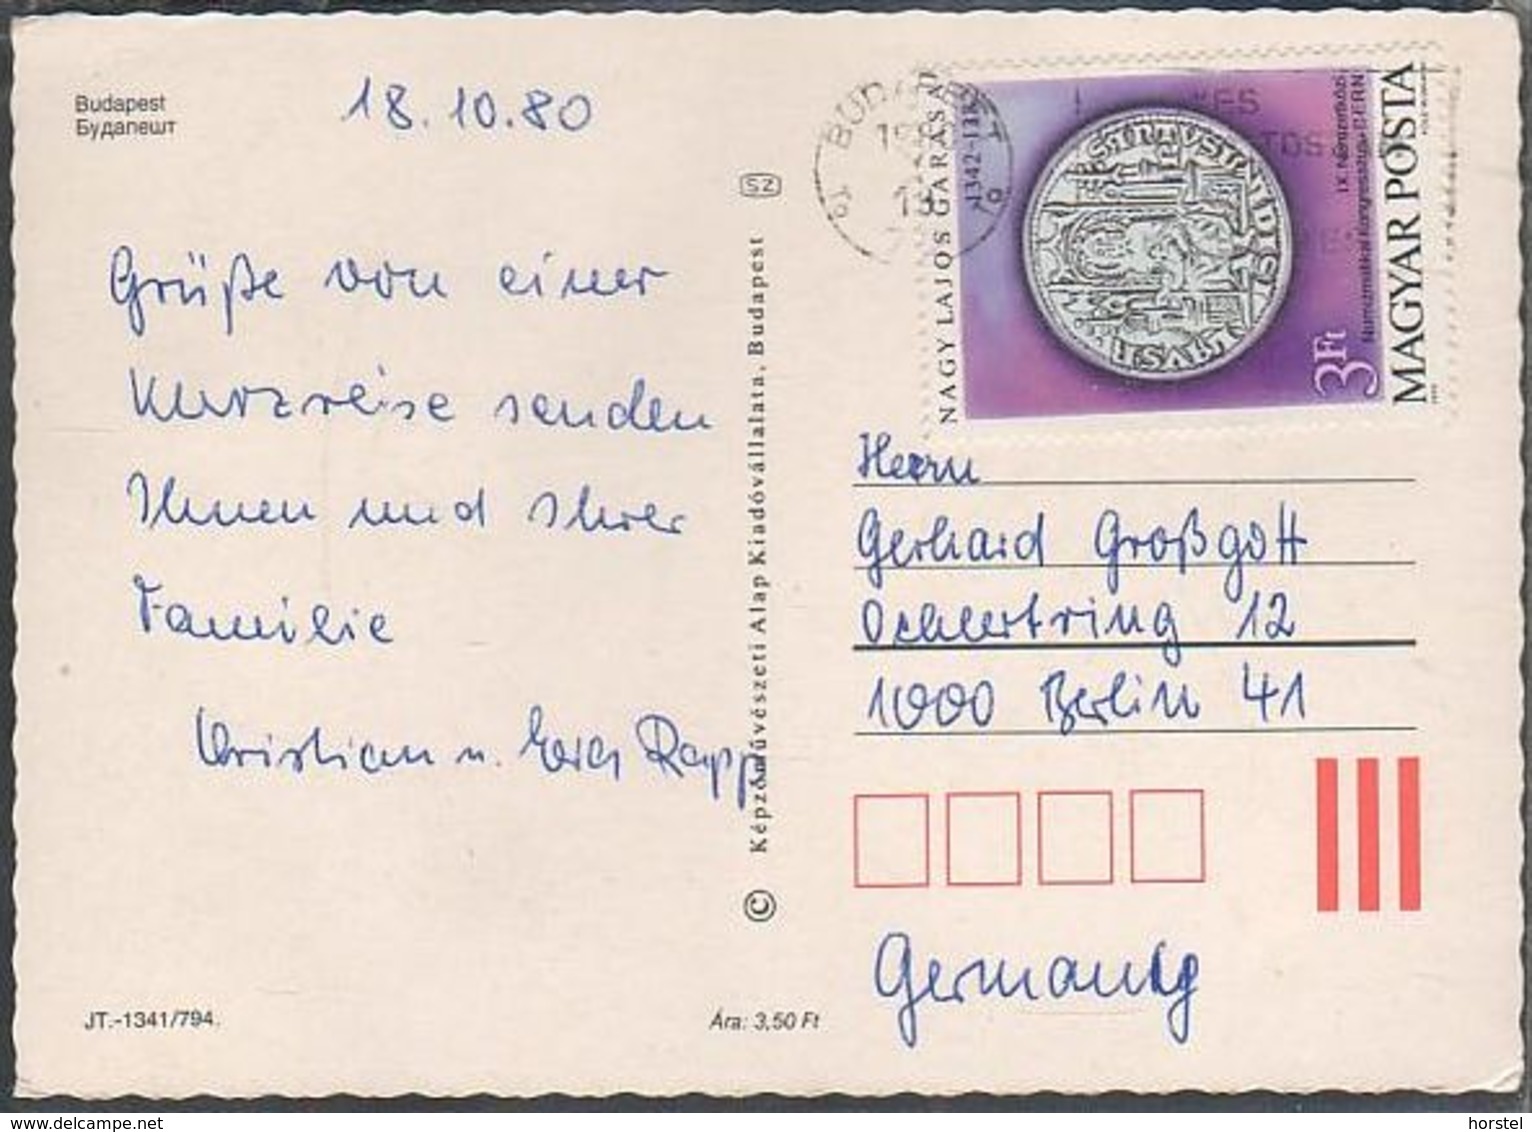 Ungarn - Budapest - Pictures - Lastkahn - Nice Stamp "coin" - Ungarn